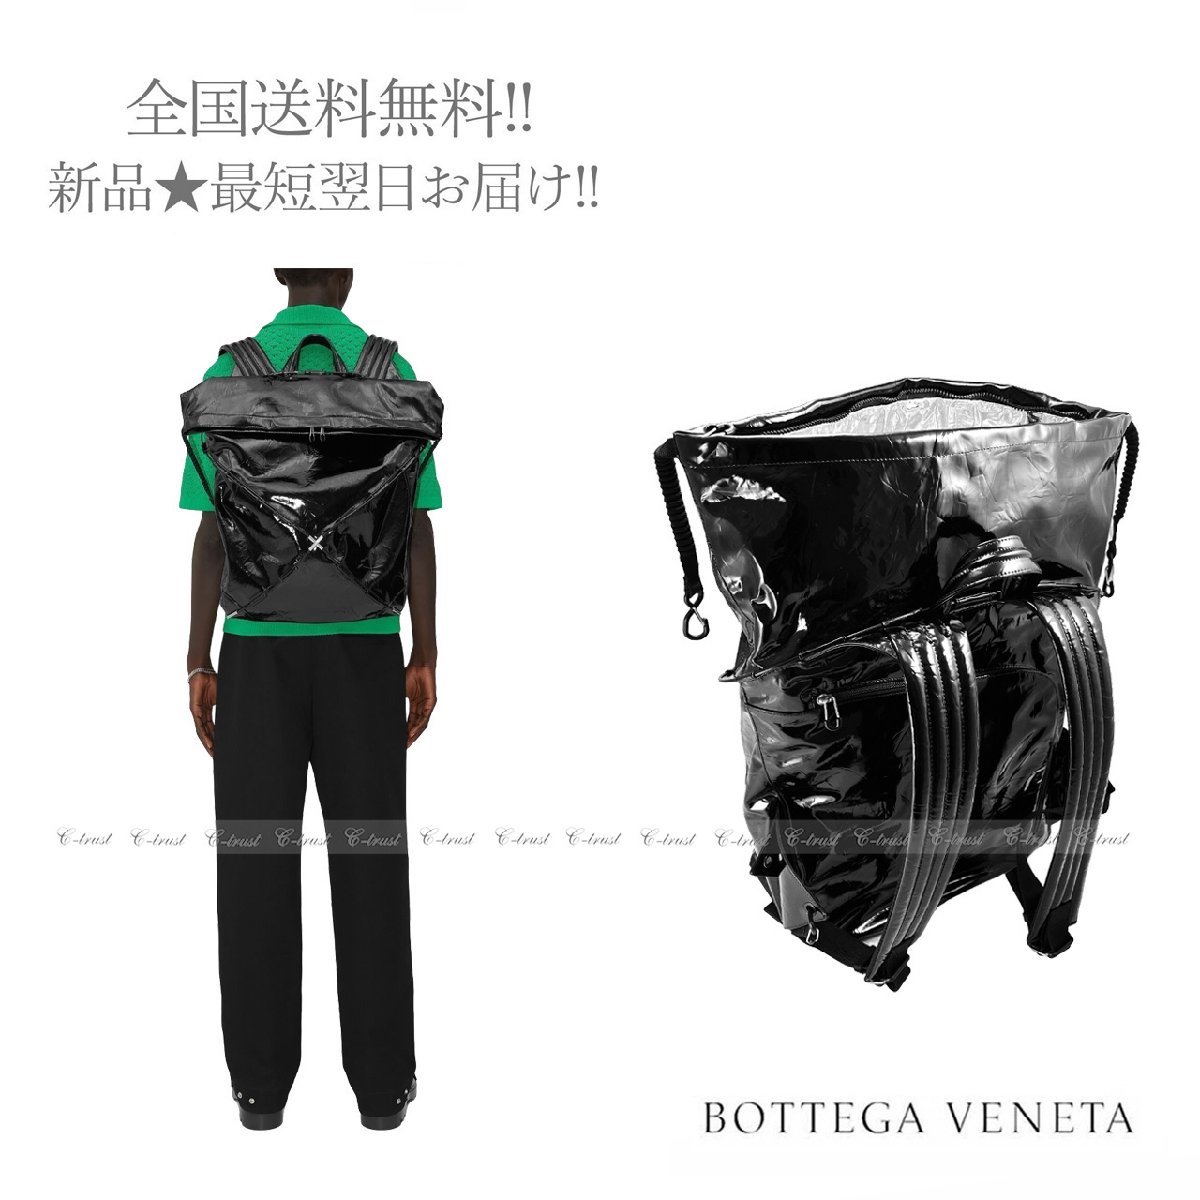 新規購入 ボッテガ VENETA BOTTEGA J948.. ヴェネタ ブラック 8803